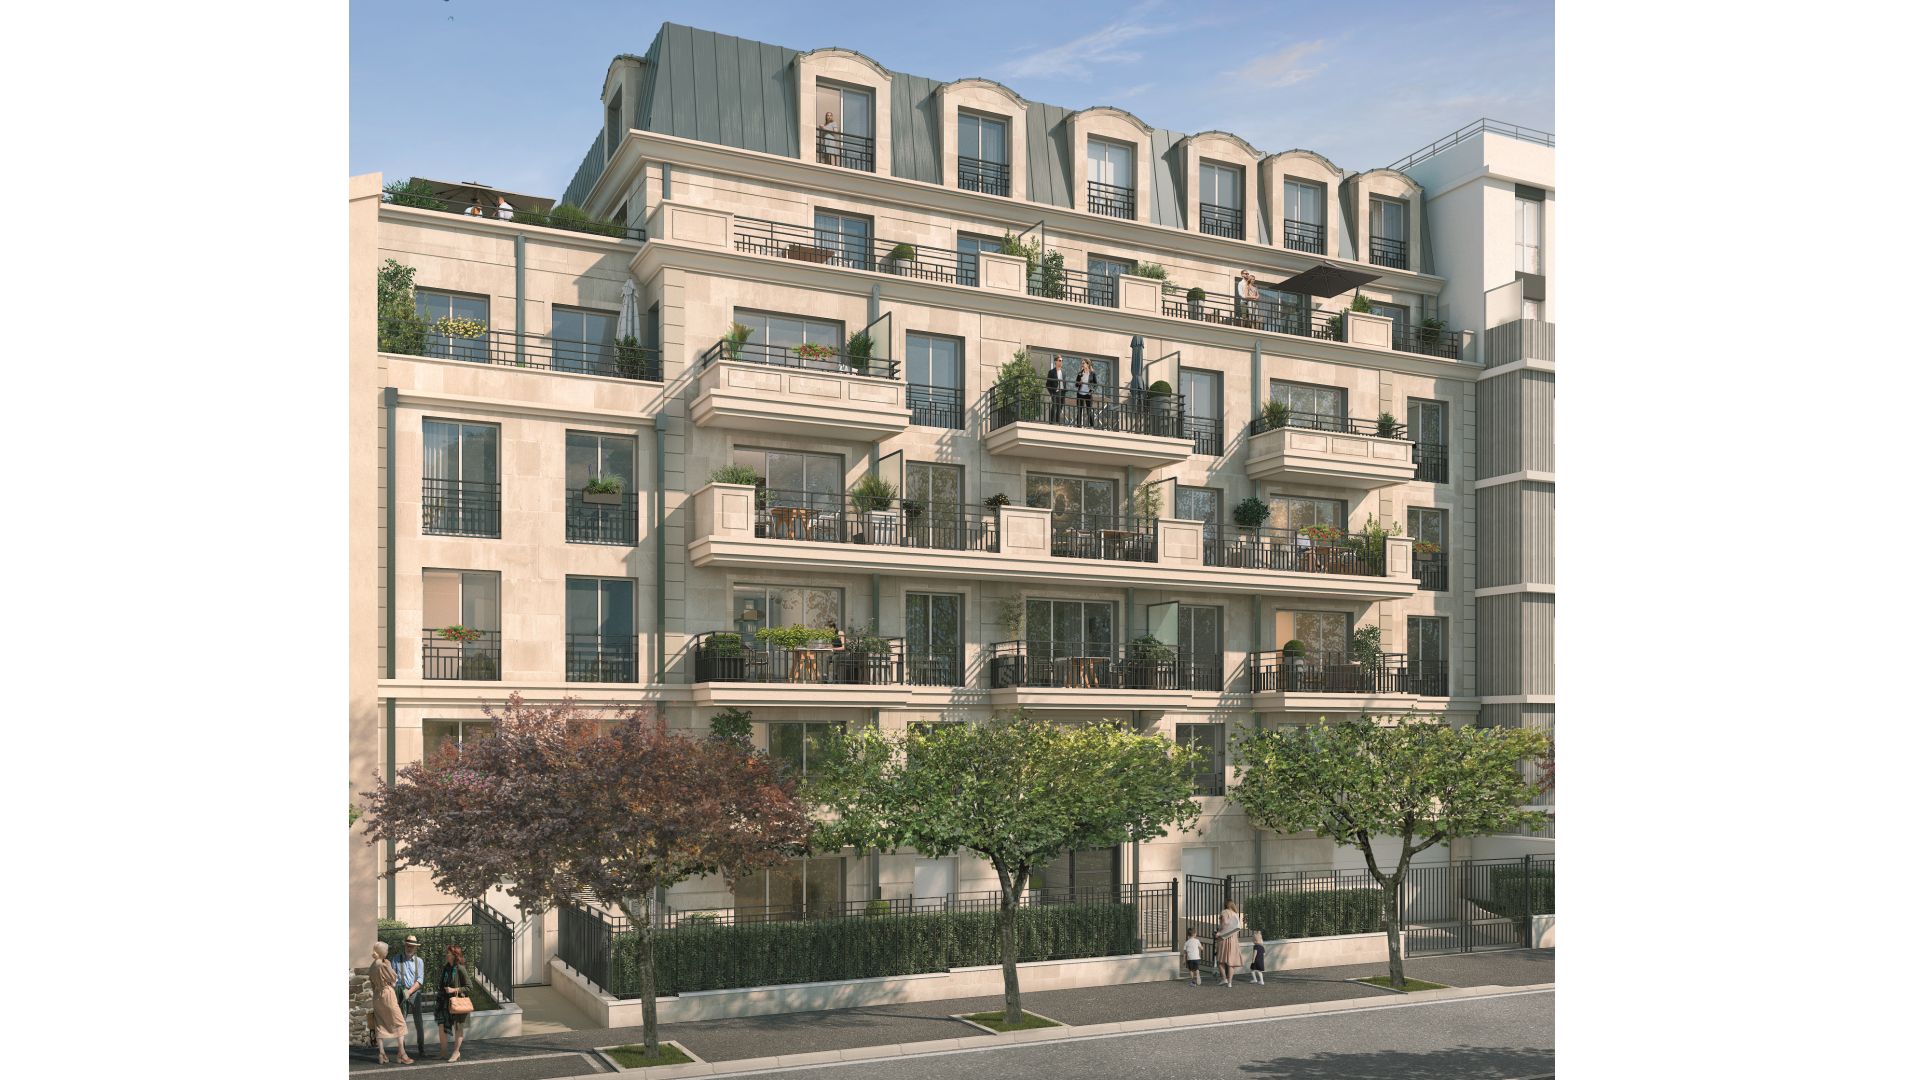 Greencity immobilier - achat appartements neufs du T1 au T4 Duplex - Résidence Le Puccini - 94500 Champigny-sur-Marne - vue rue